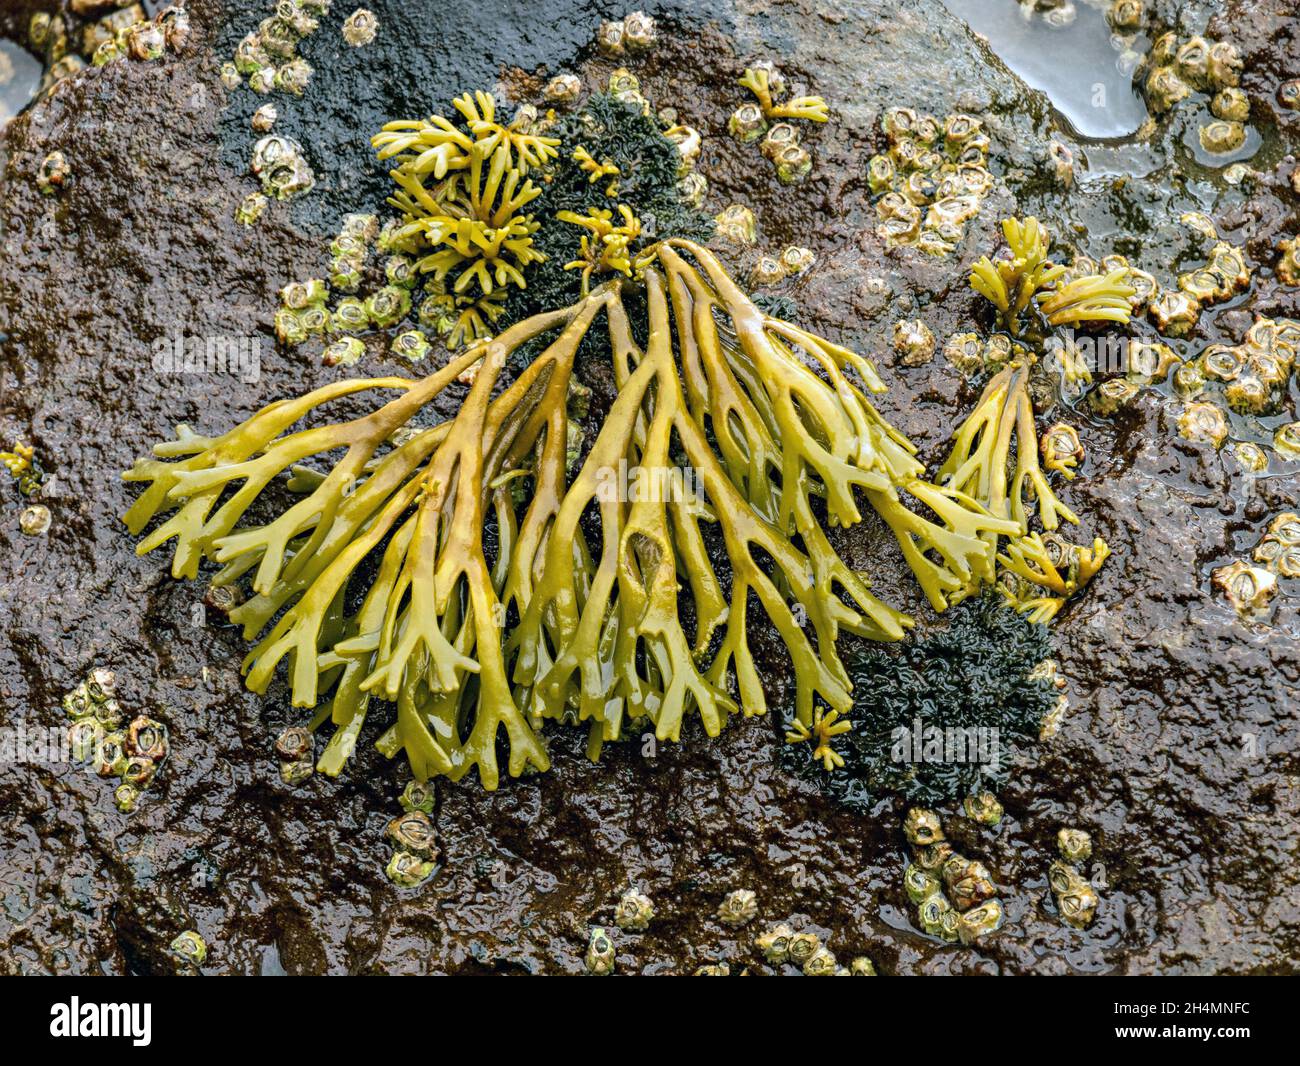 Nahaufnahme von hellgrünen und nassen kanalisierten Seegras (Pelvetia canaliculata), die auf schwarzem Meeresgestein wachsen und Seeteulen aufziehen, Schottland, Großbritannien Stockfoto